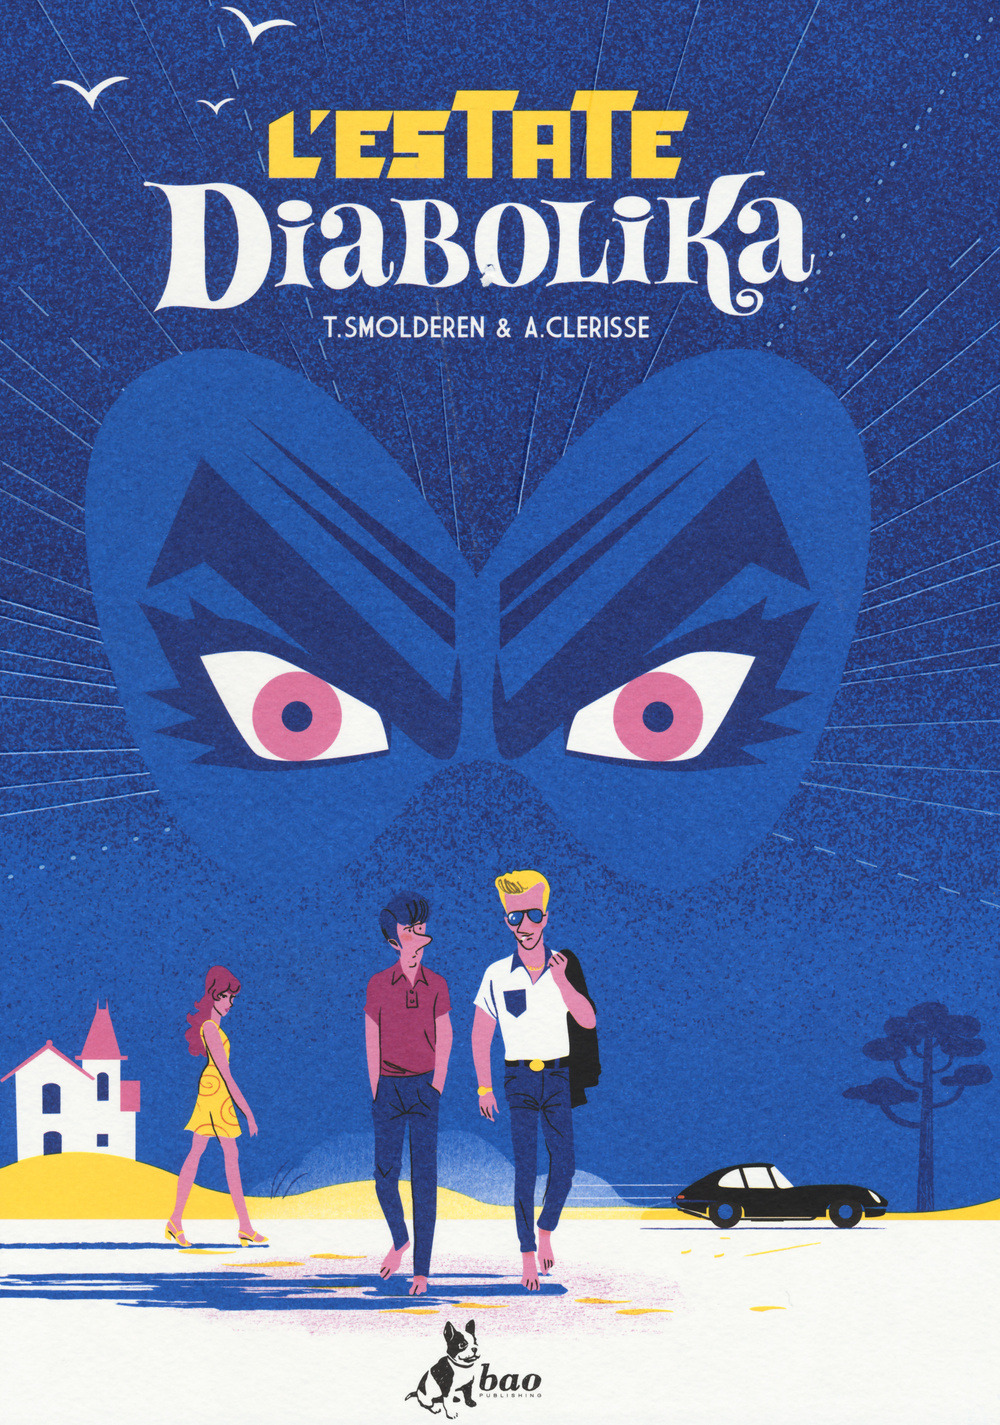 L’estate diabolika (cover)